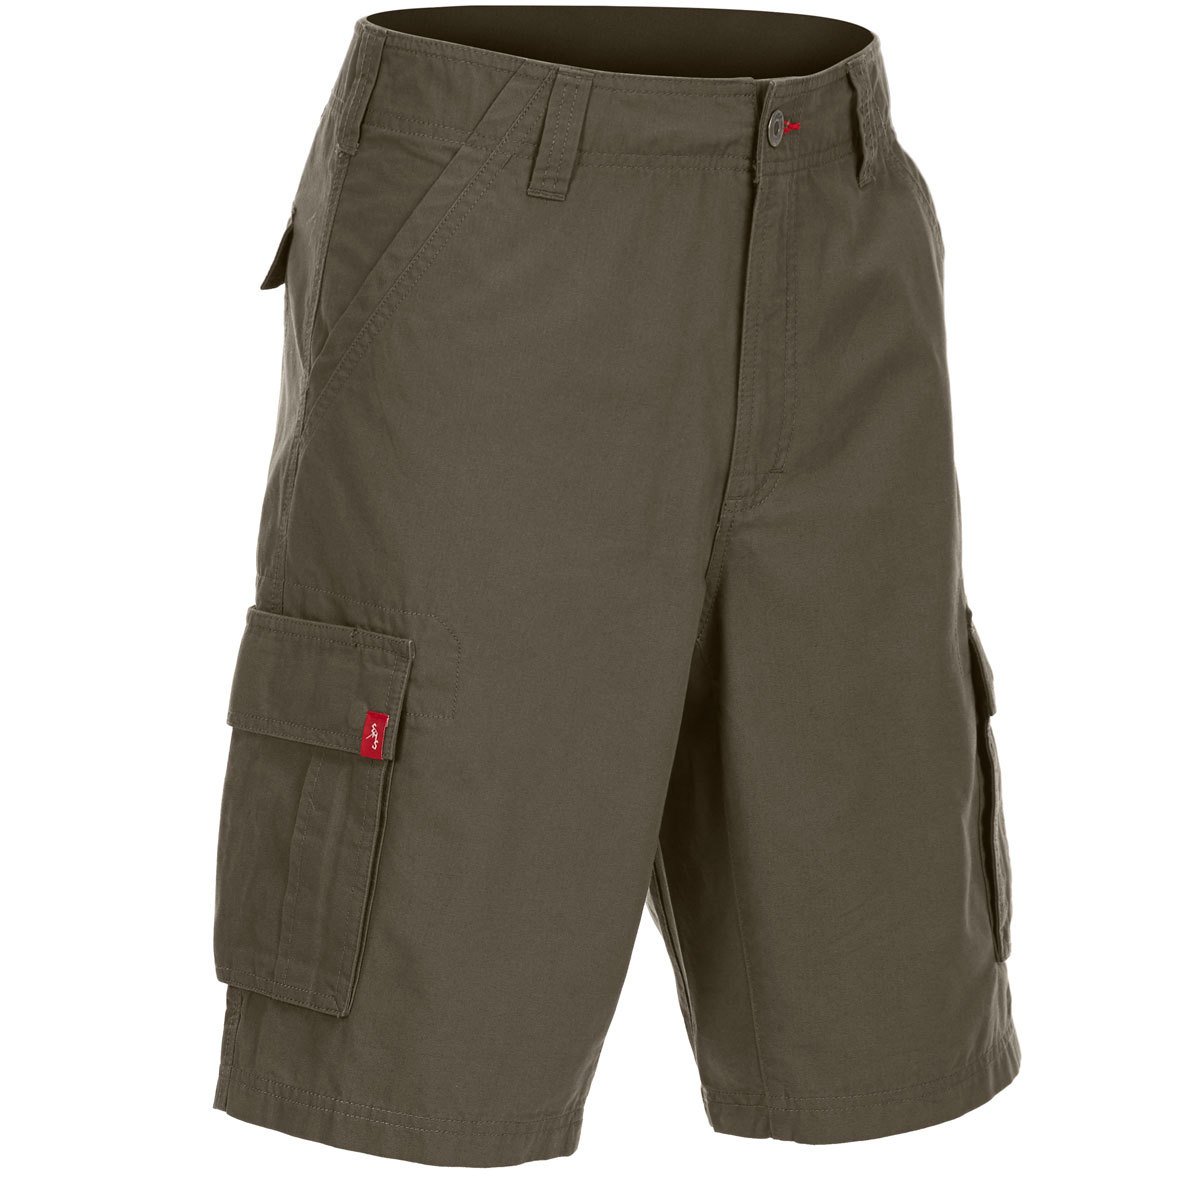 Ems Men's Dockworker Cargo Shorts - Green, 30